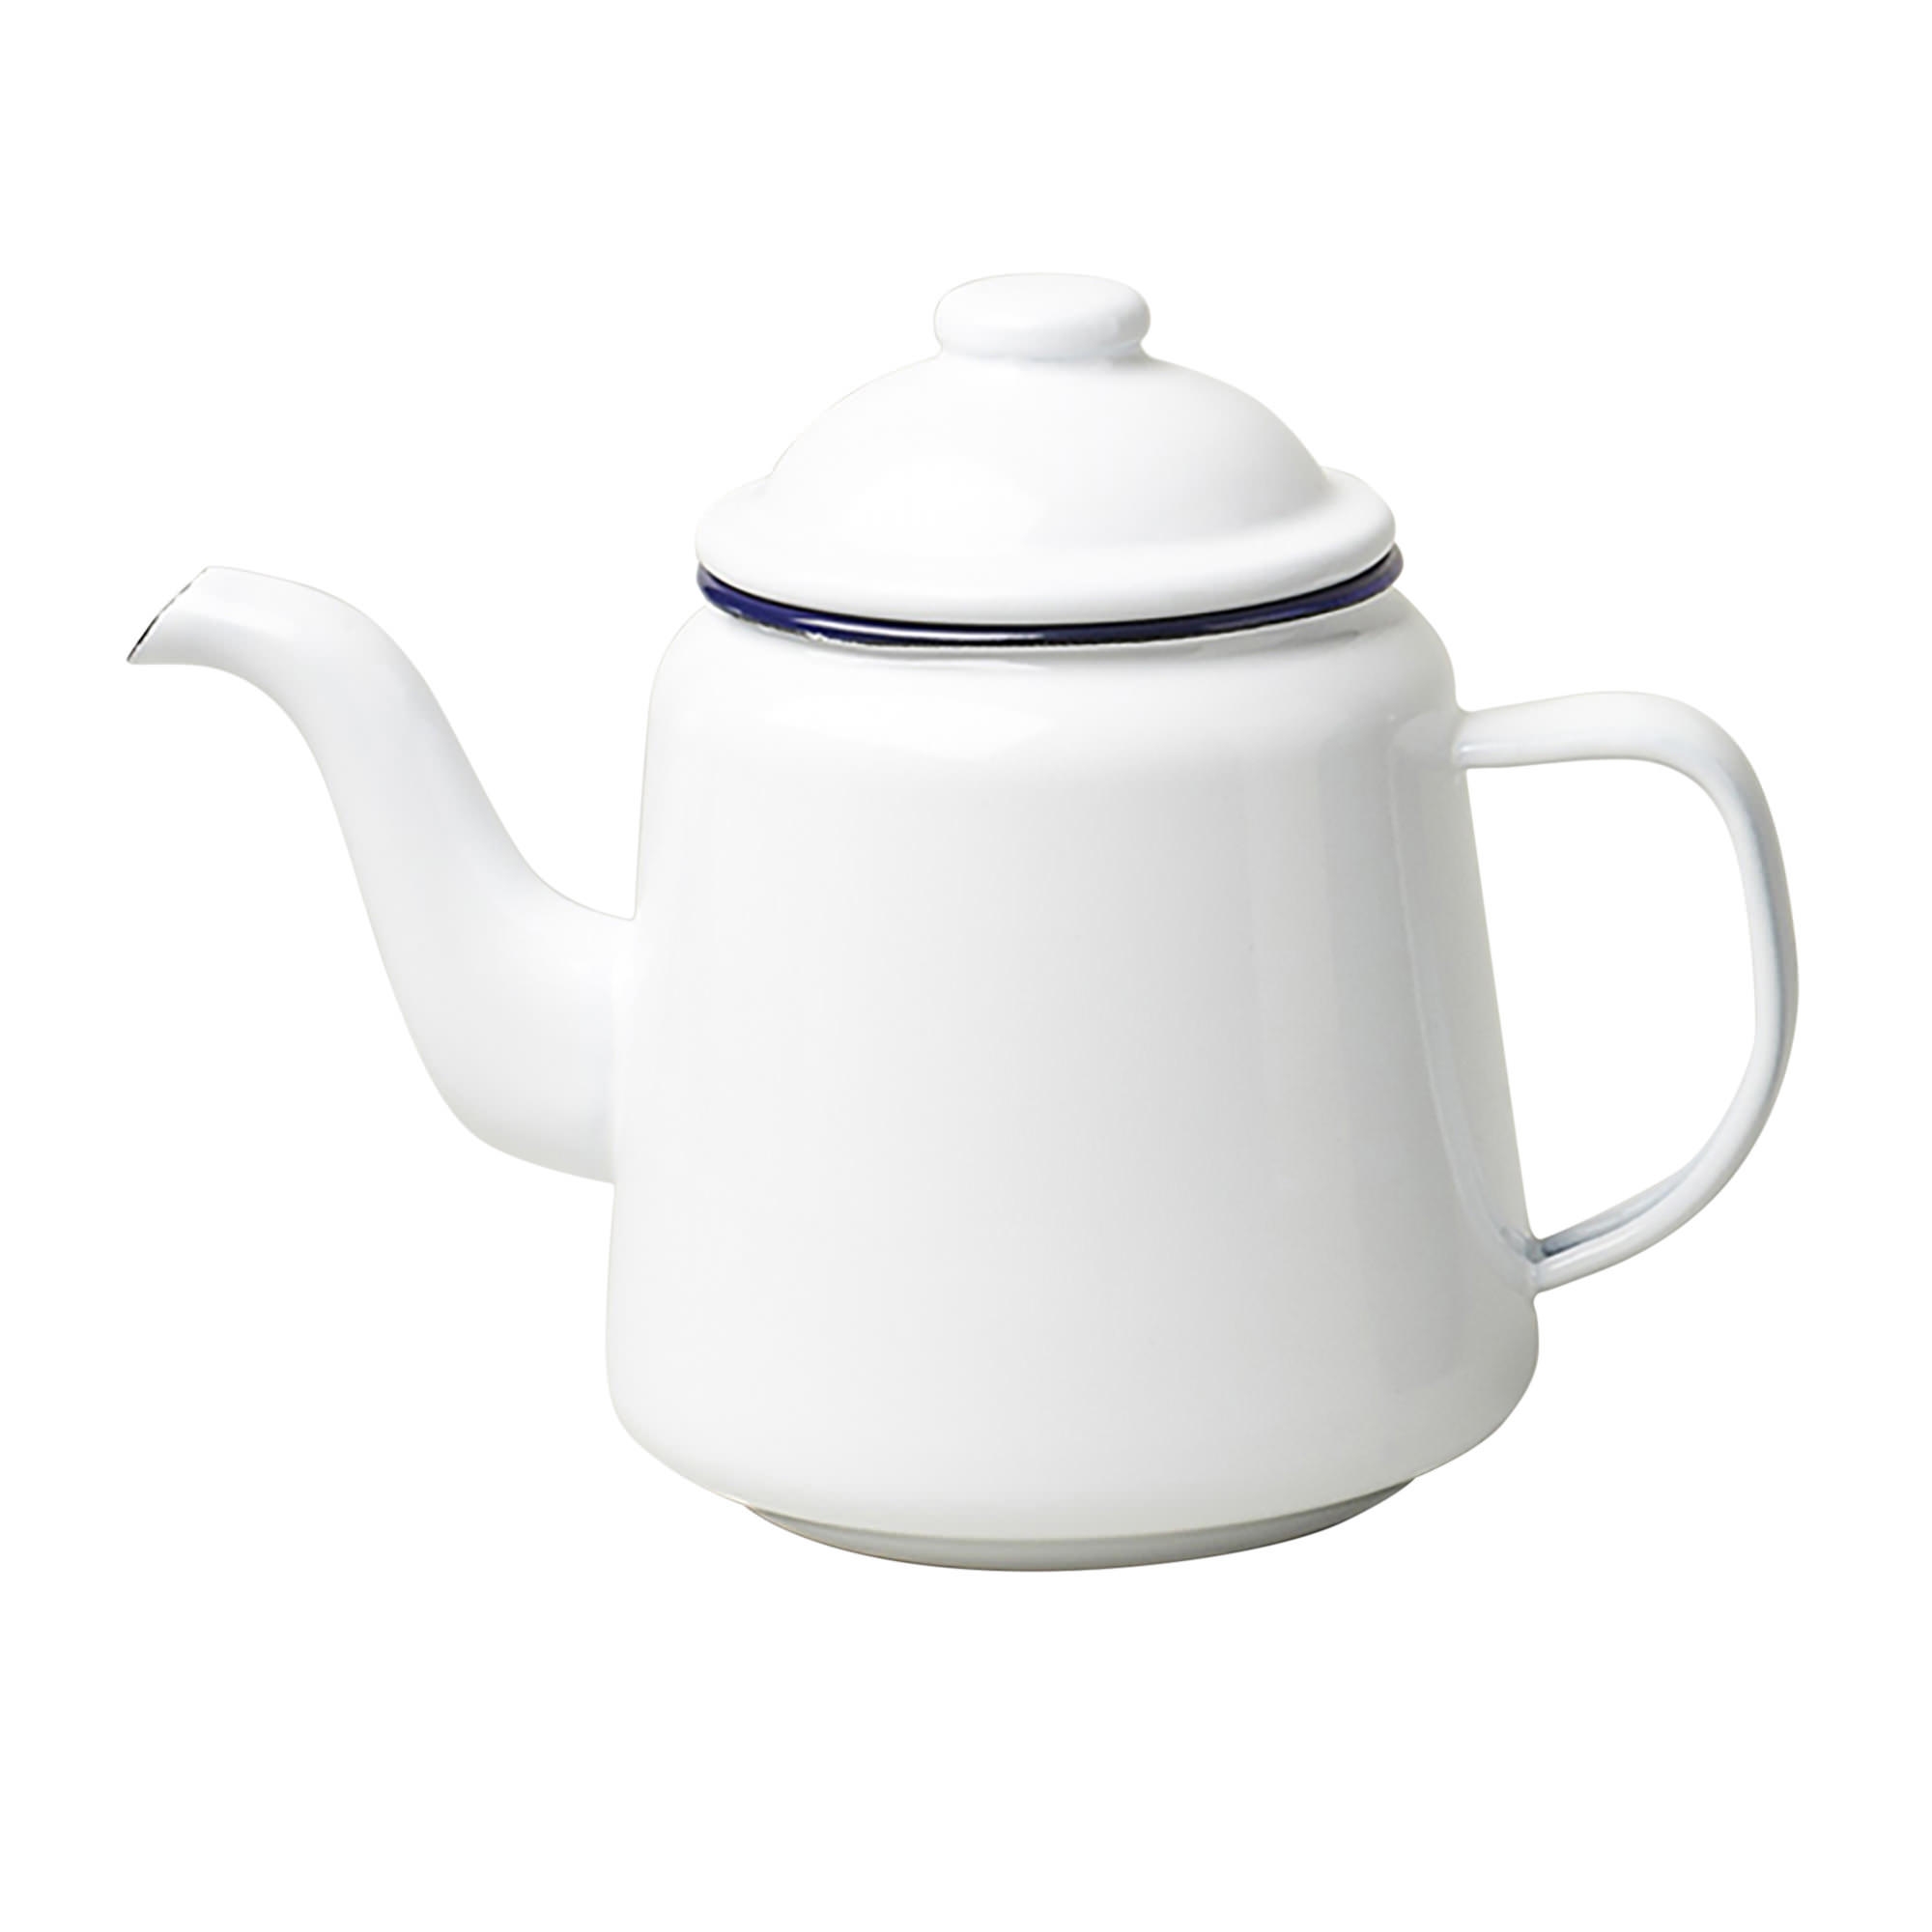 Falcon Enamelware Teapot 1.5L White Image 1